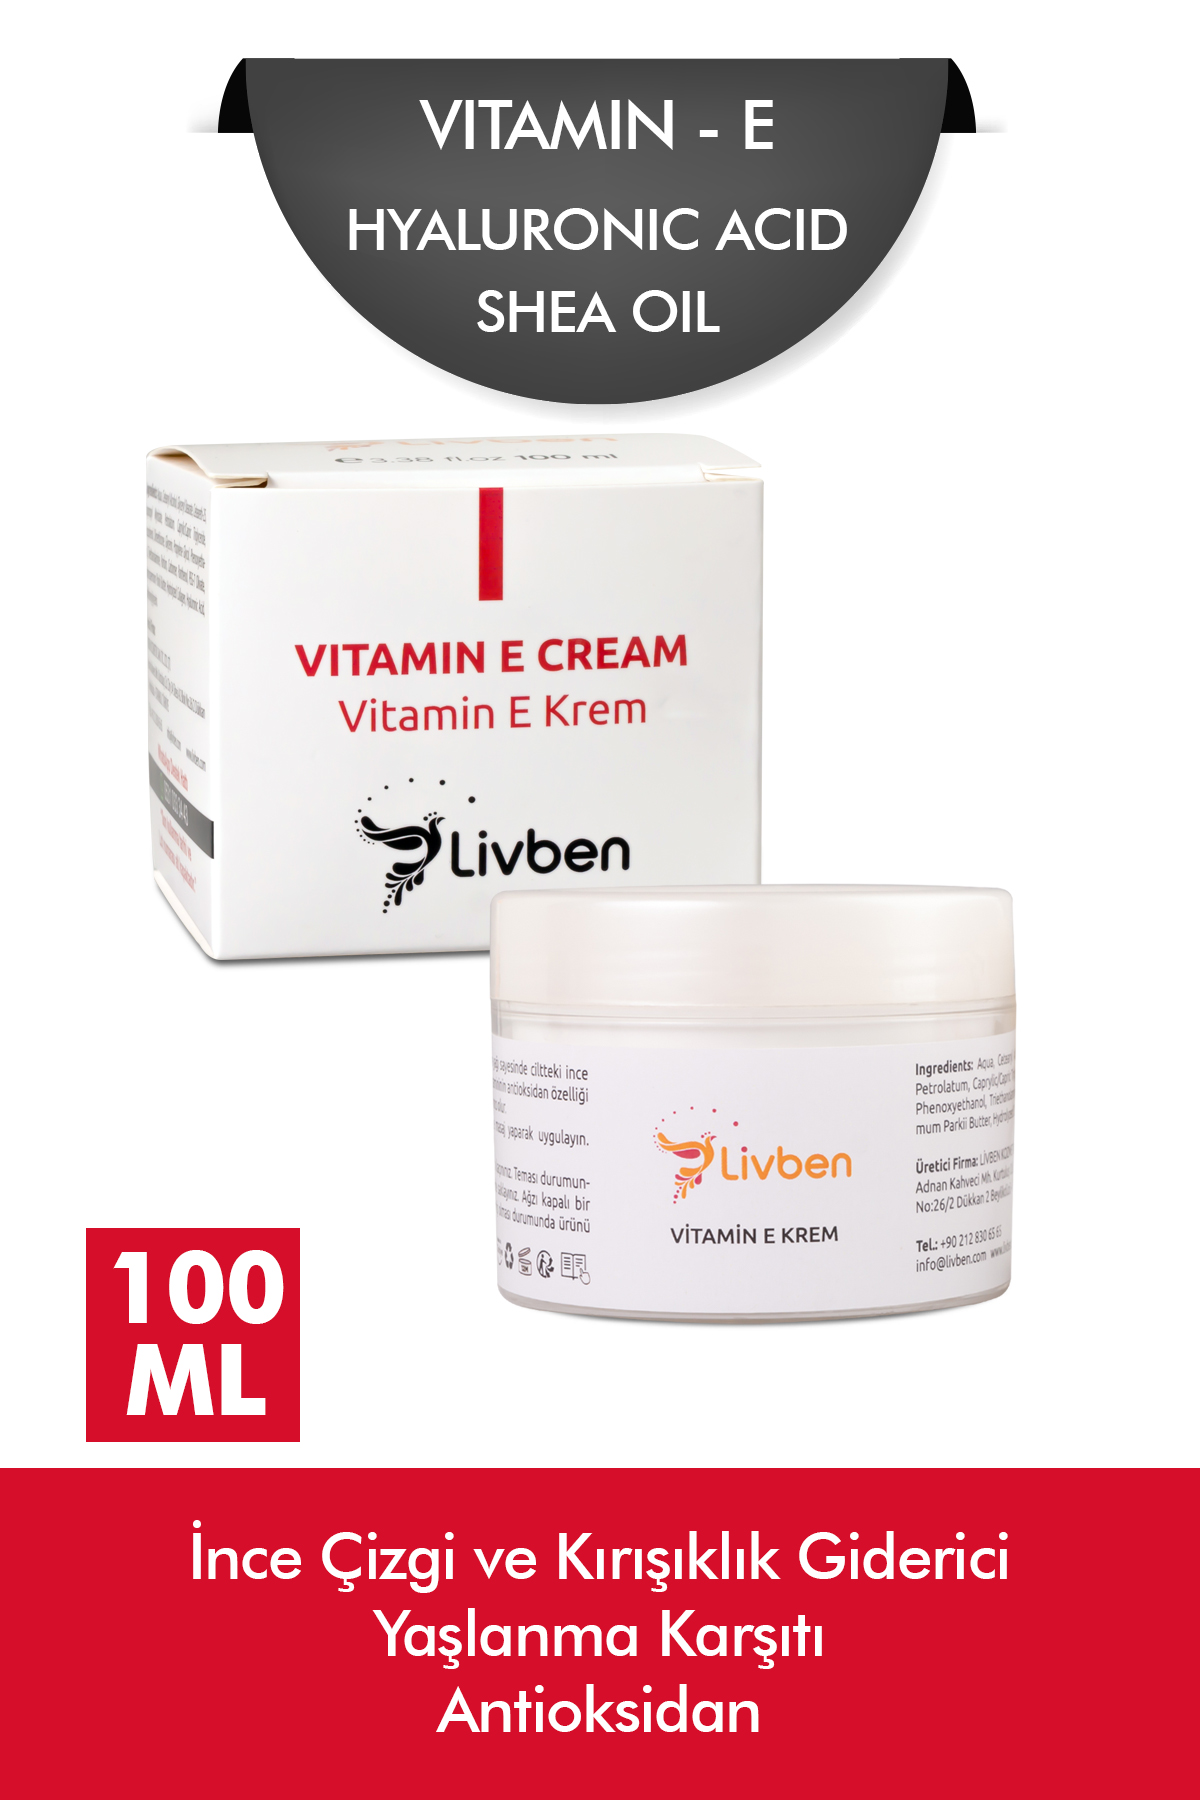 Livben ® Cilt Tonu Eşitleyici Beyazlatıcı Serum 30 ml ve Yaşlanma Karşıtı Vitamin E Krem 100 Ml